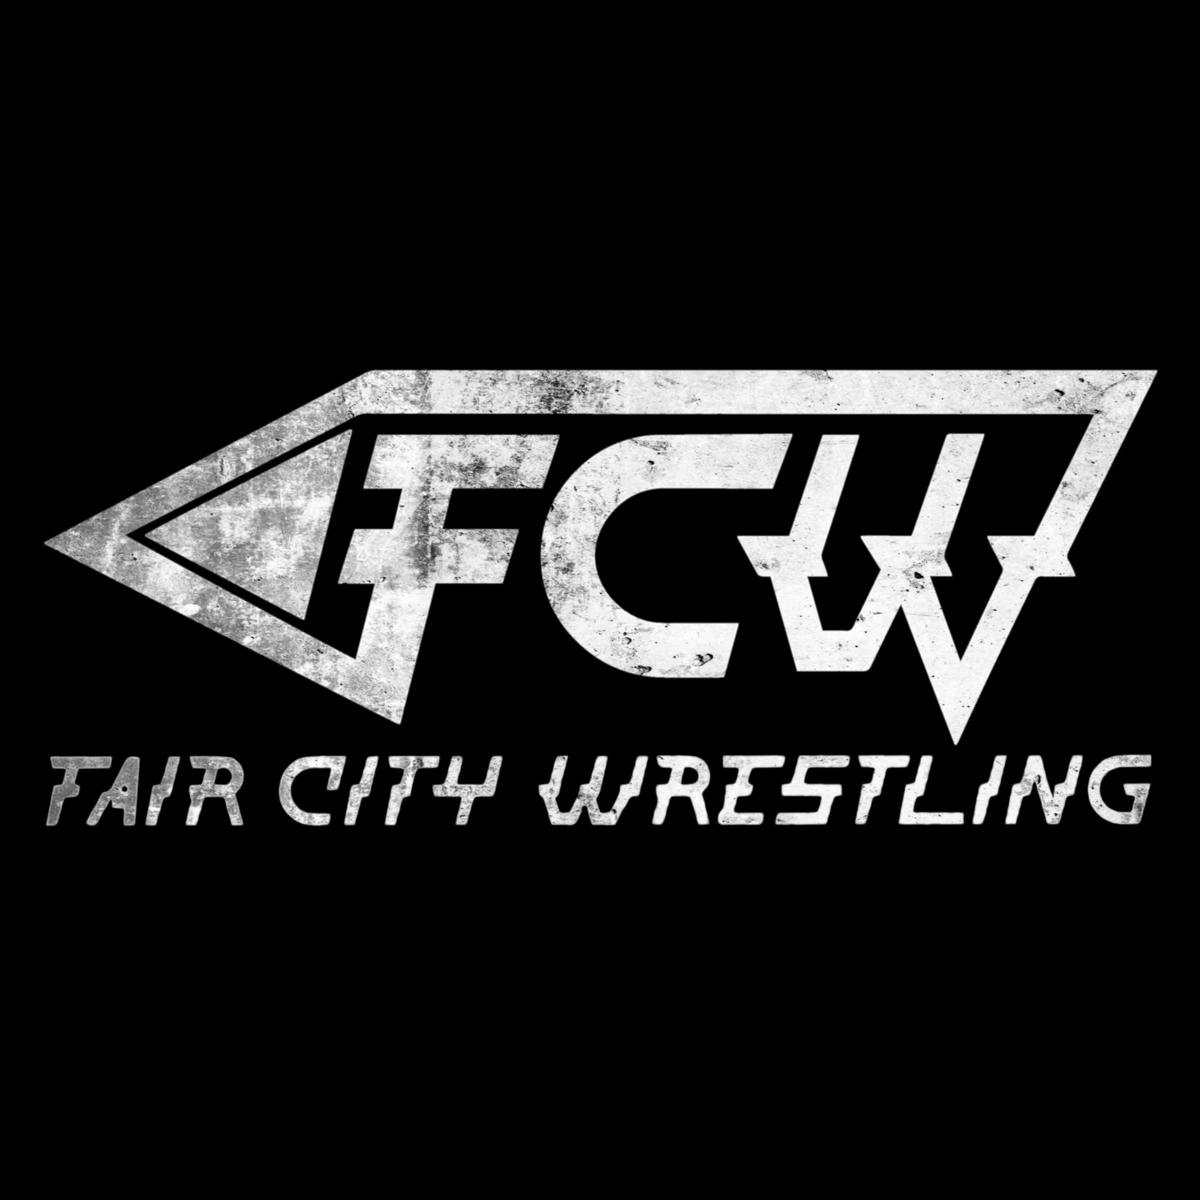 | Fair City Wrestling